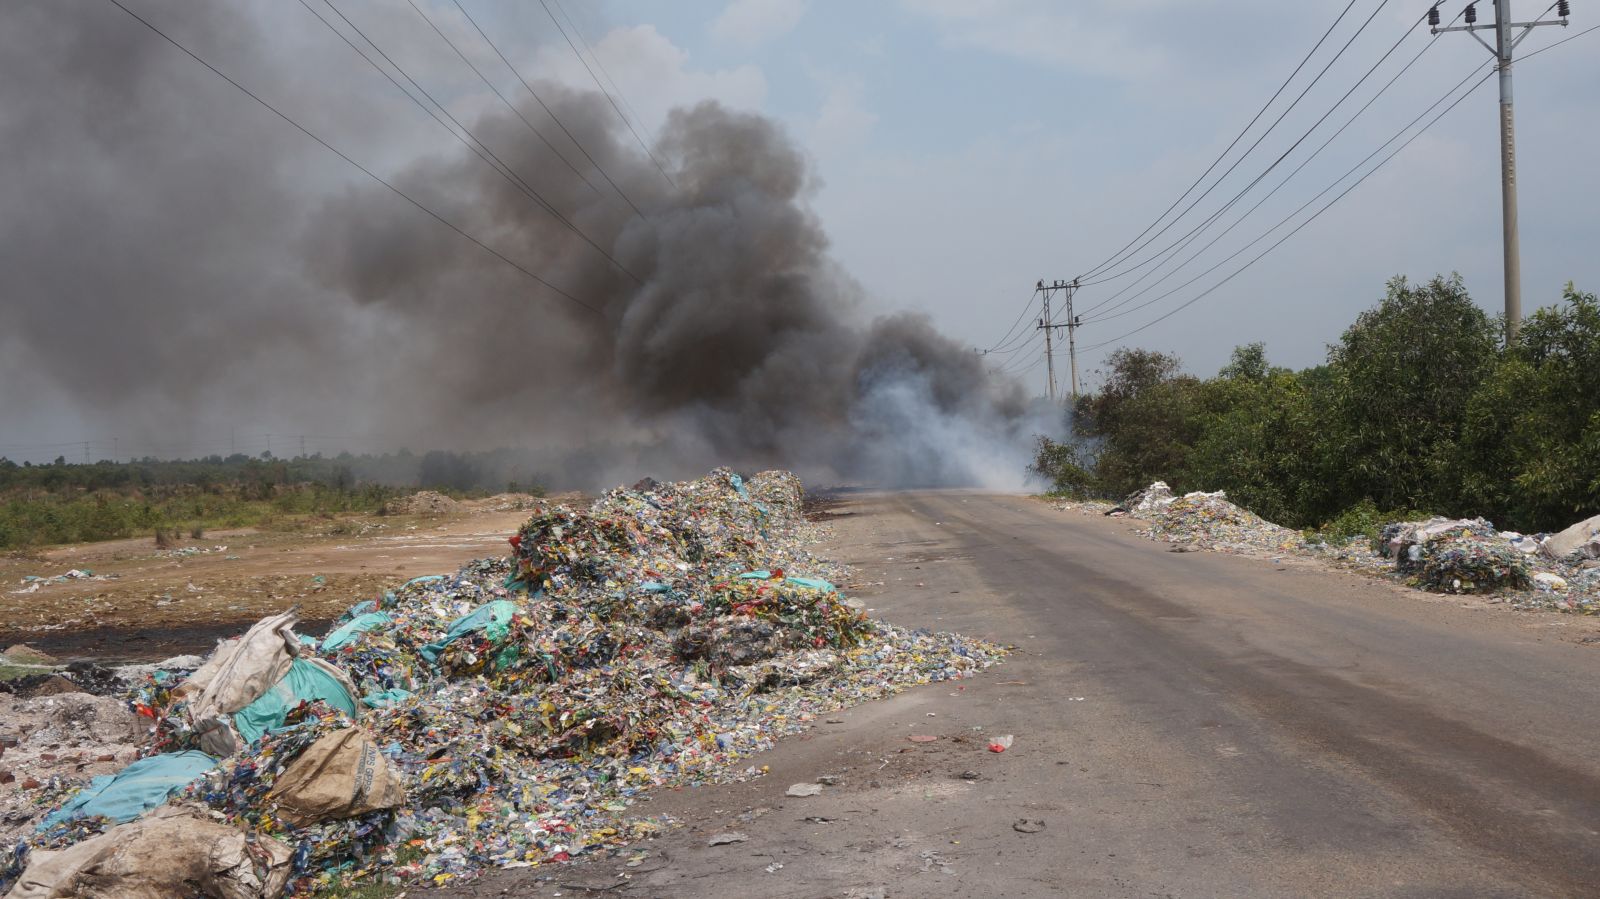 UBND tỉnh Long An sẽ sớm có chỉ đạo xử lý tình trạng đổ rác tràn lan trên Đường tỉnh 823C